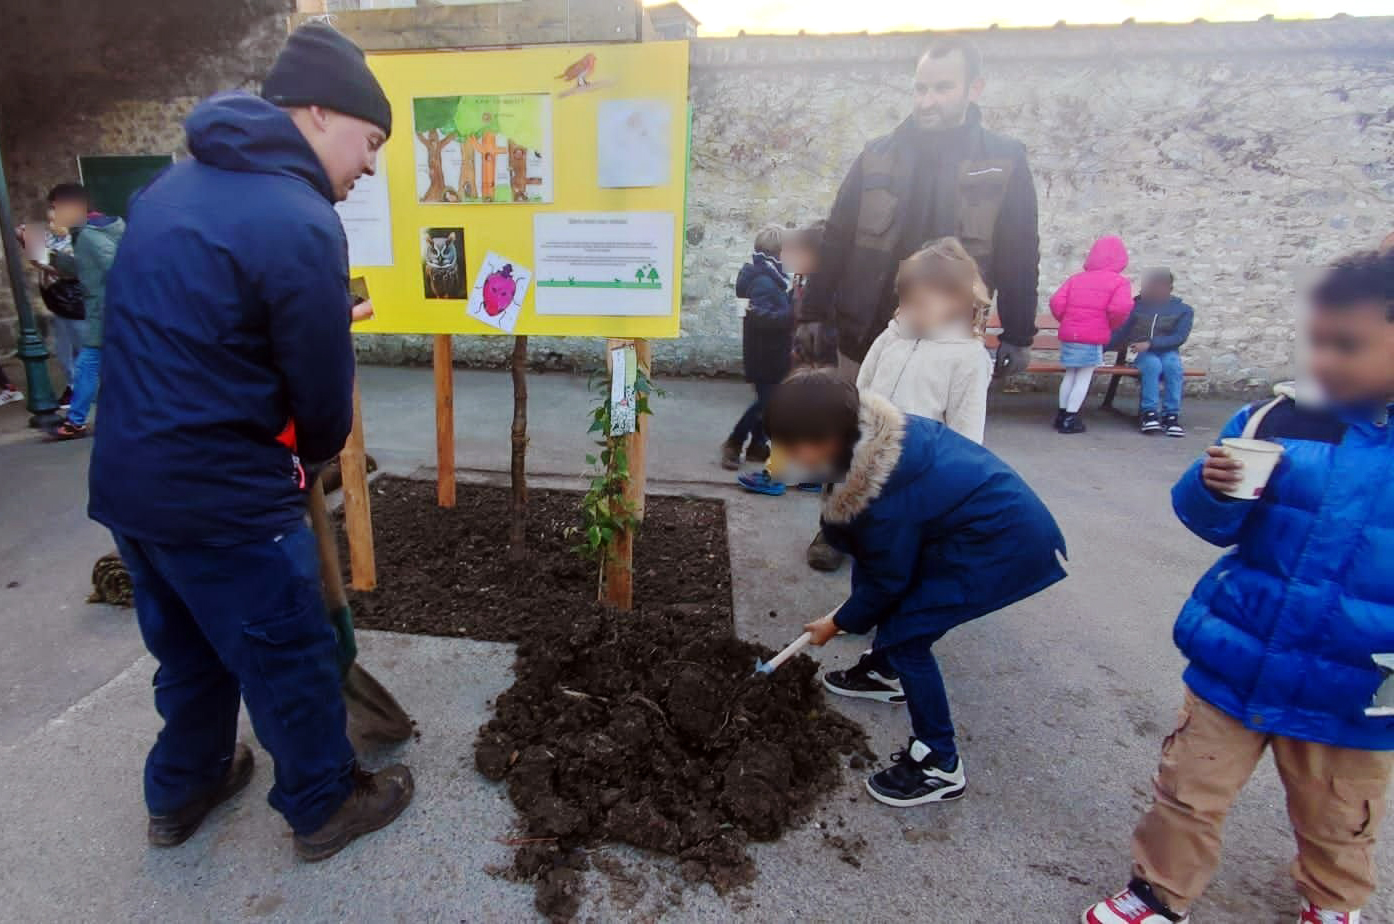 À l'école Pierre-Sauvage de Compiègne, de nombreux arbres ont été plantés avec l'aide des élèves afin de donner, sur le long terme, de l'ombre aux enfants. LP/Stéphanie Forestier